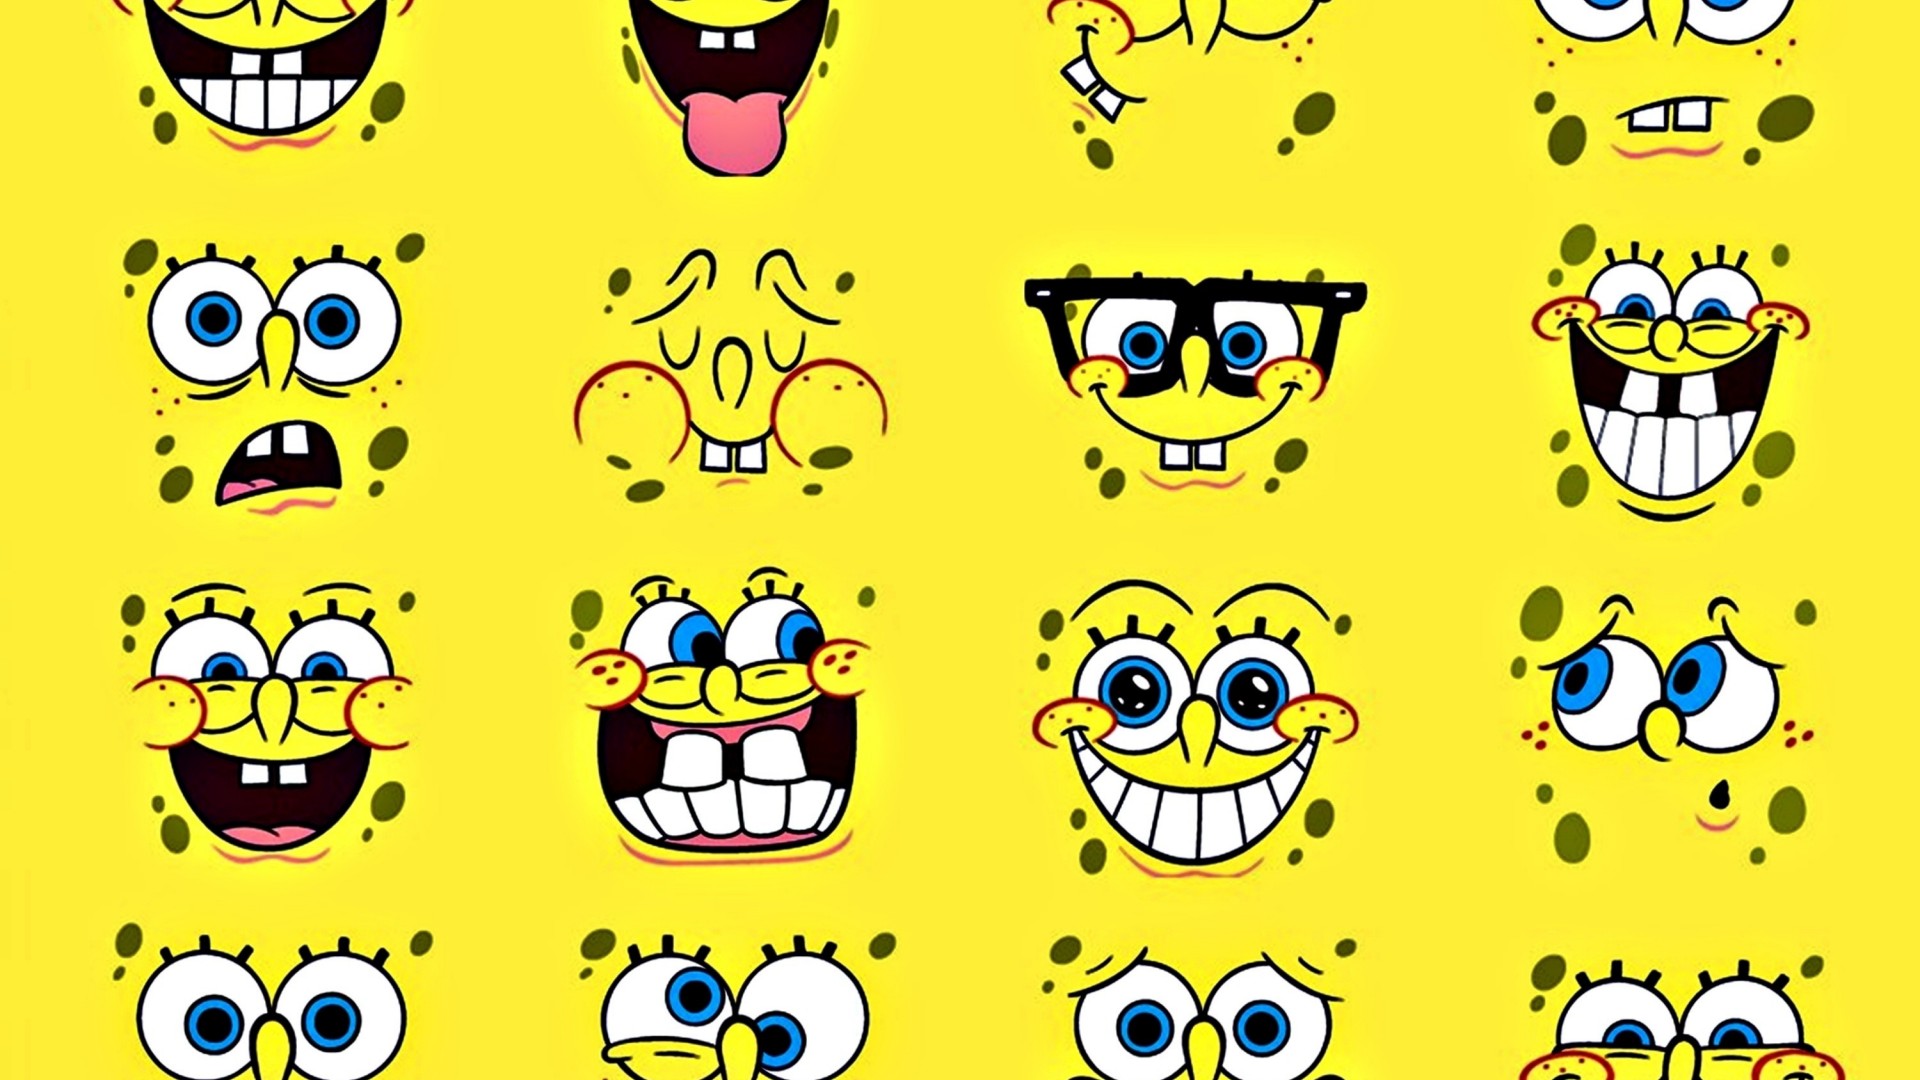 Spongebob Wallpapers Pictures Images